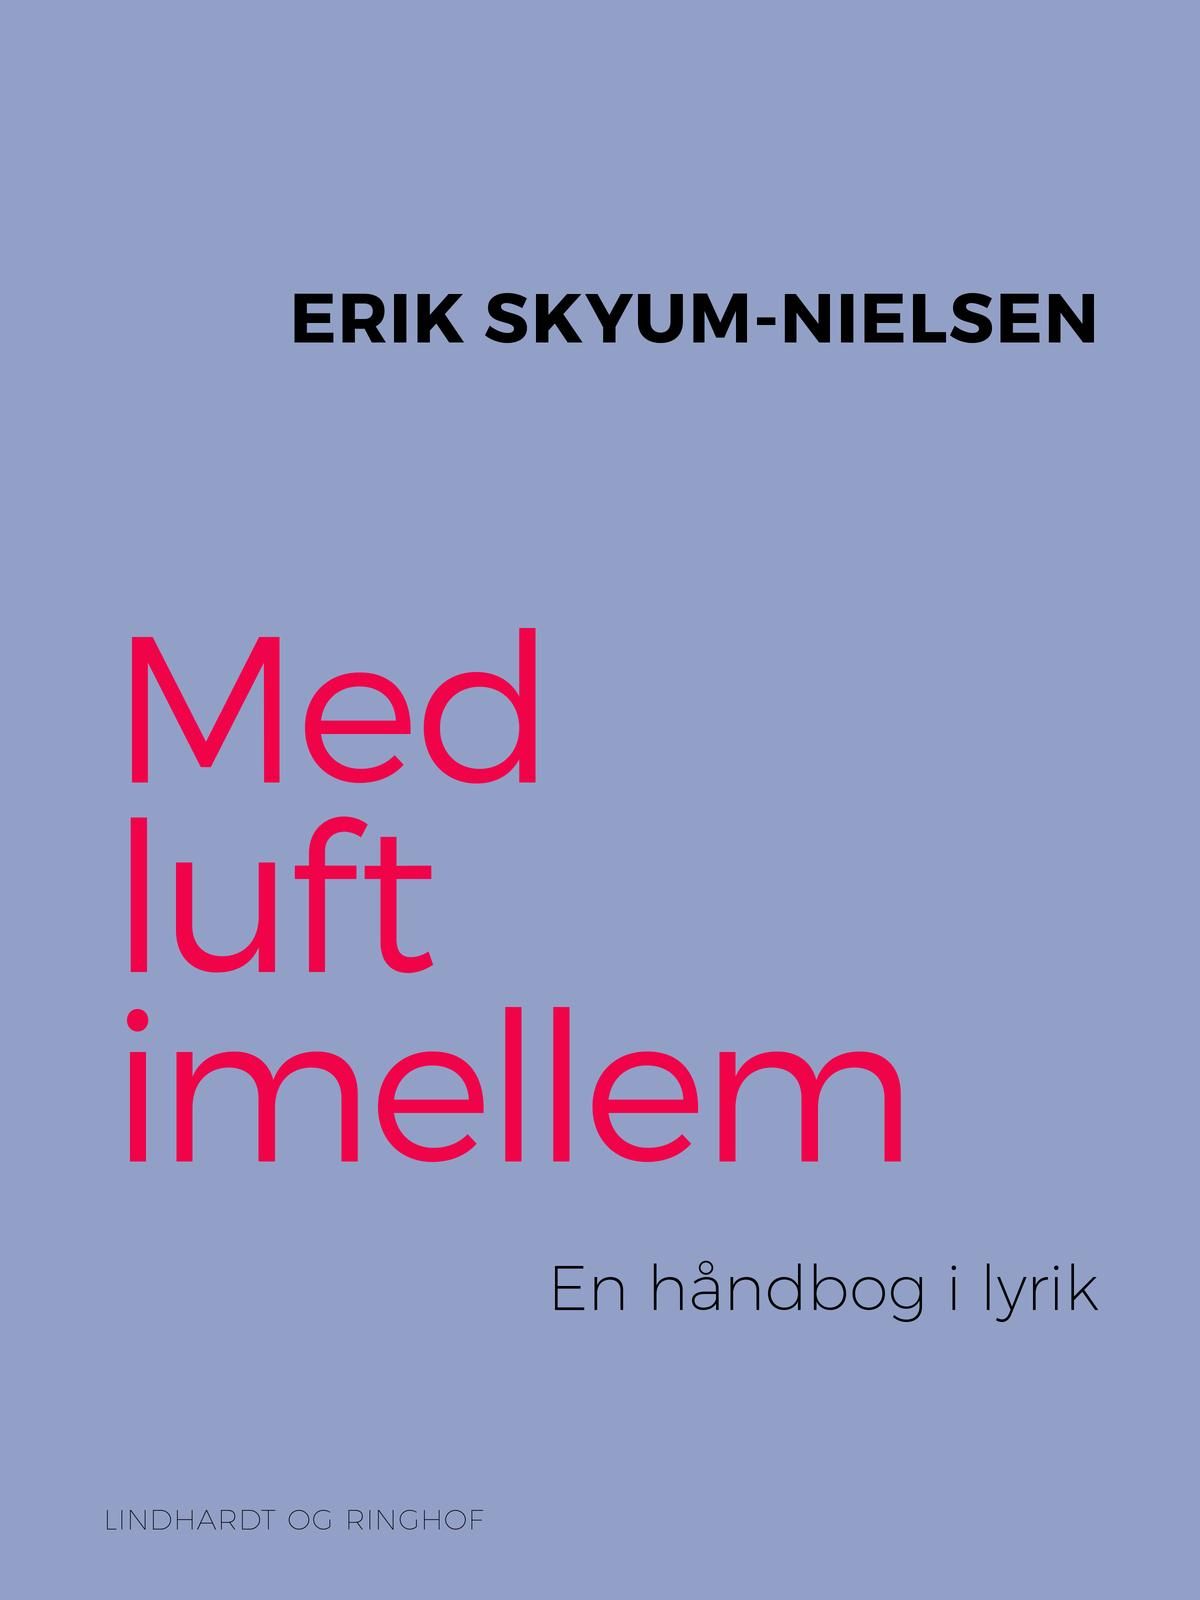 Med luft imellem. En håndbog i lyrik, e-bog af Erik Skyum Nielsen